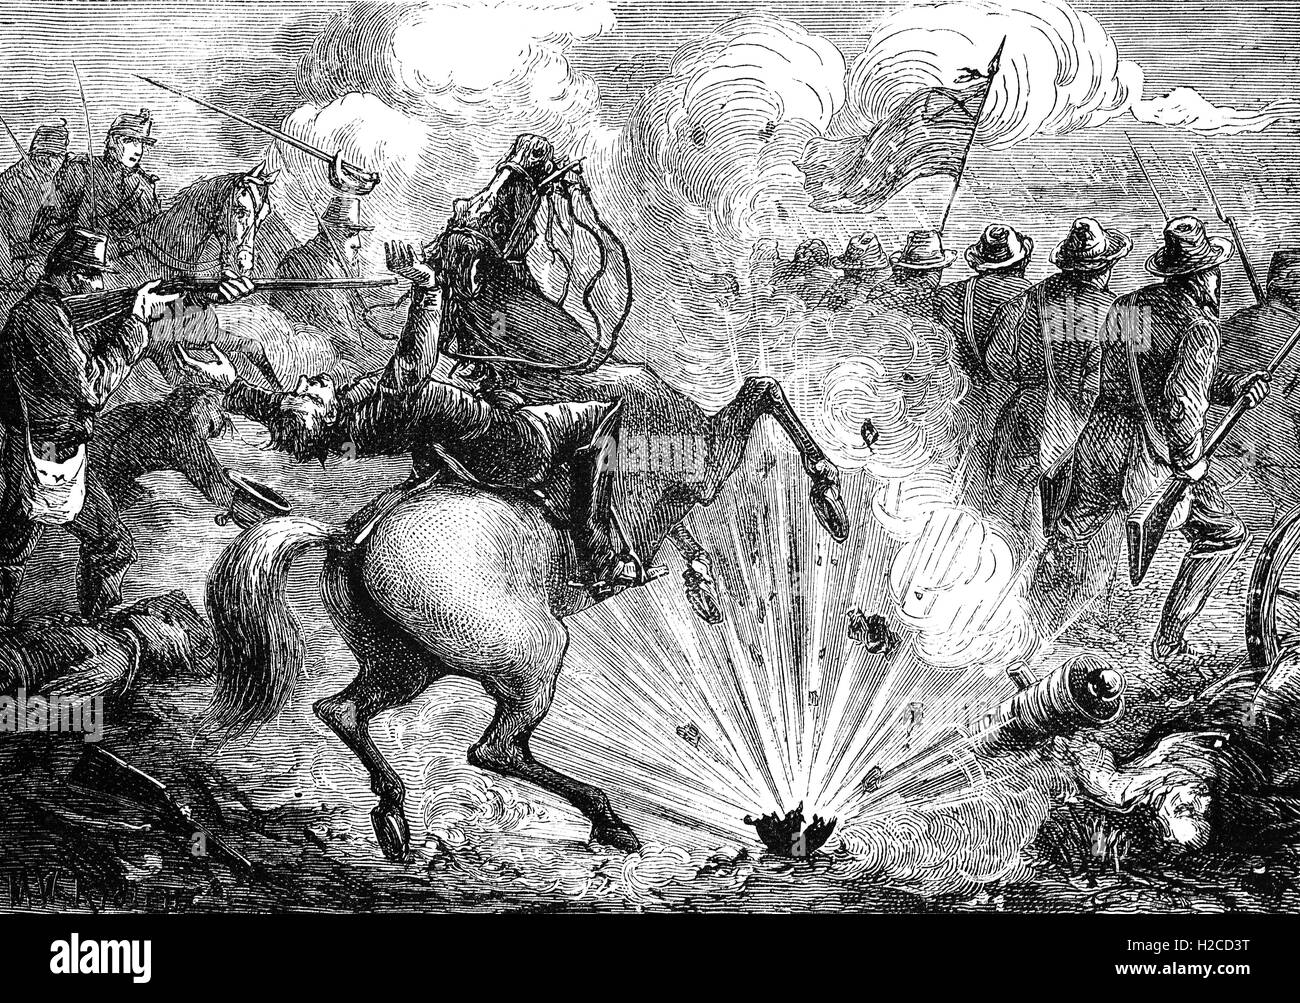 La battaglia di Shiloh, conosciuta anche come Battaglia di Pittsburg Landing, era la seconda grande battaglia della Guerra Civile americana (1862). La battaglia combattuta il 6 di aprile - 7, 1862, nel sud-ovest del Tennessee, si è conclusa con il ritiro delle truppe Confederate ma non è stata una vittoria dell'Unione. Foto Stock